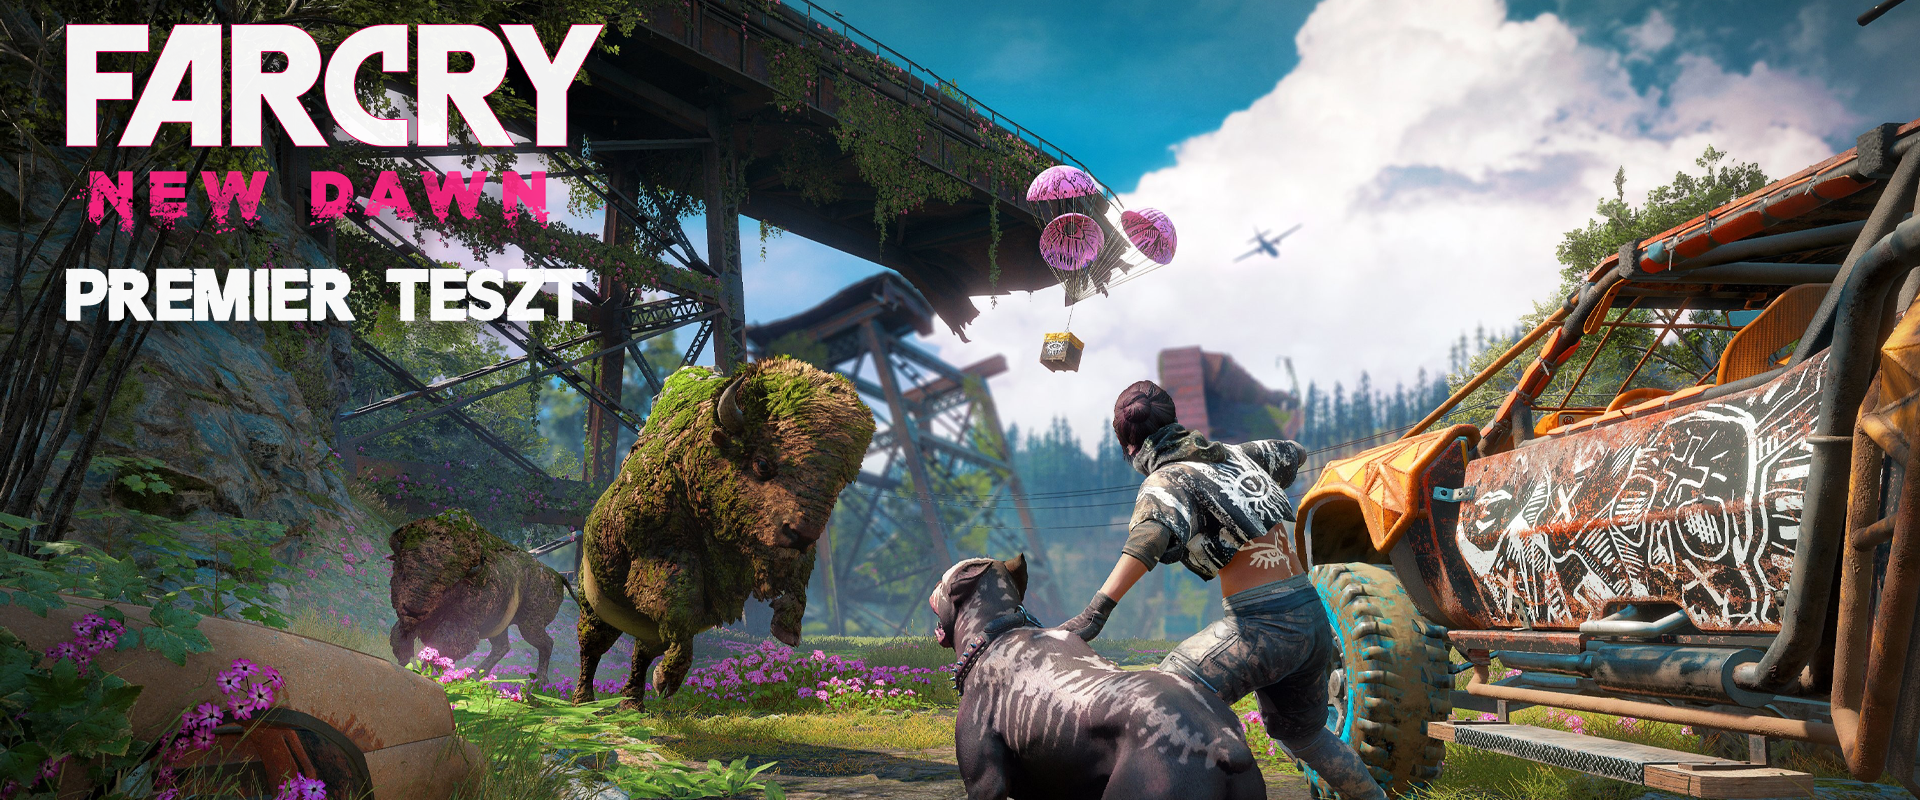 Far Cry: New Dawn teszt - Végre egy igényes tripla A besorolású játék